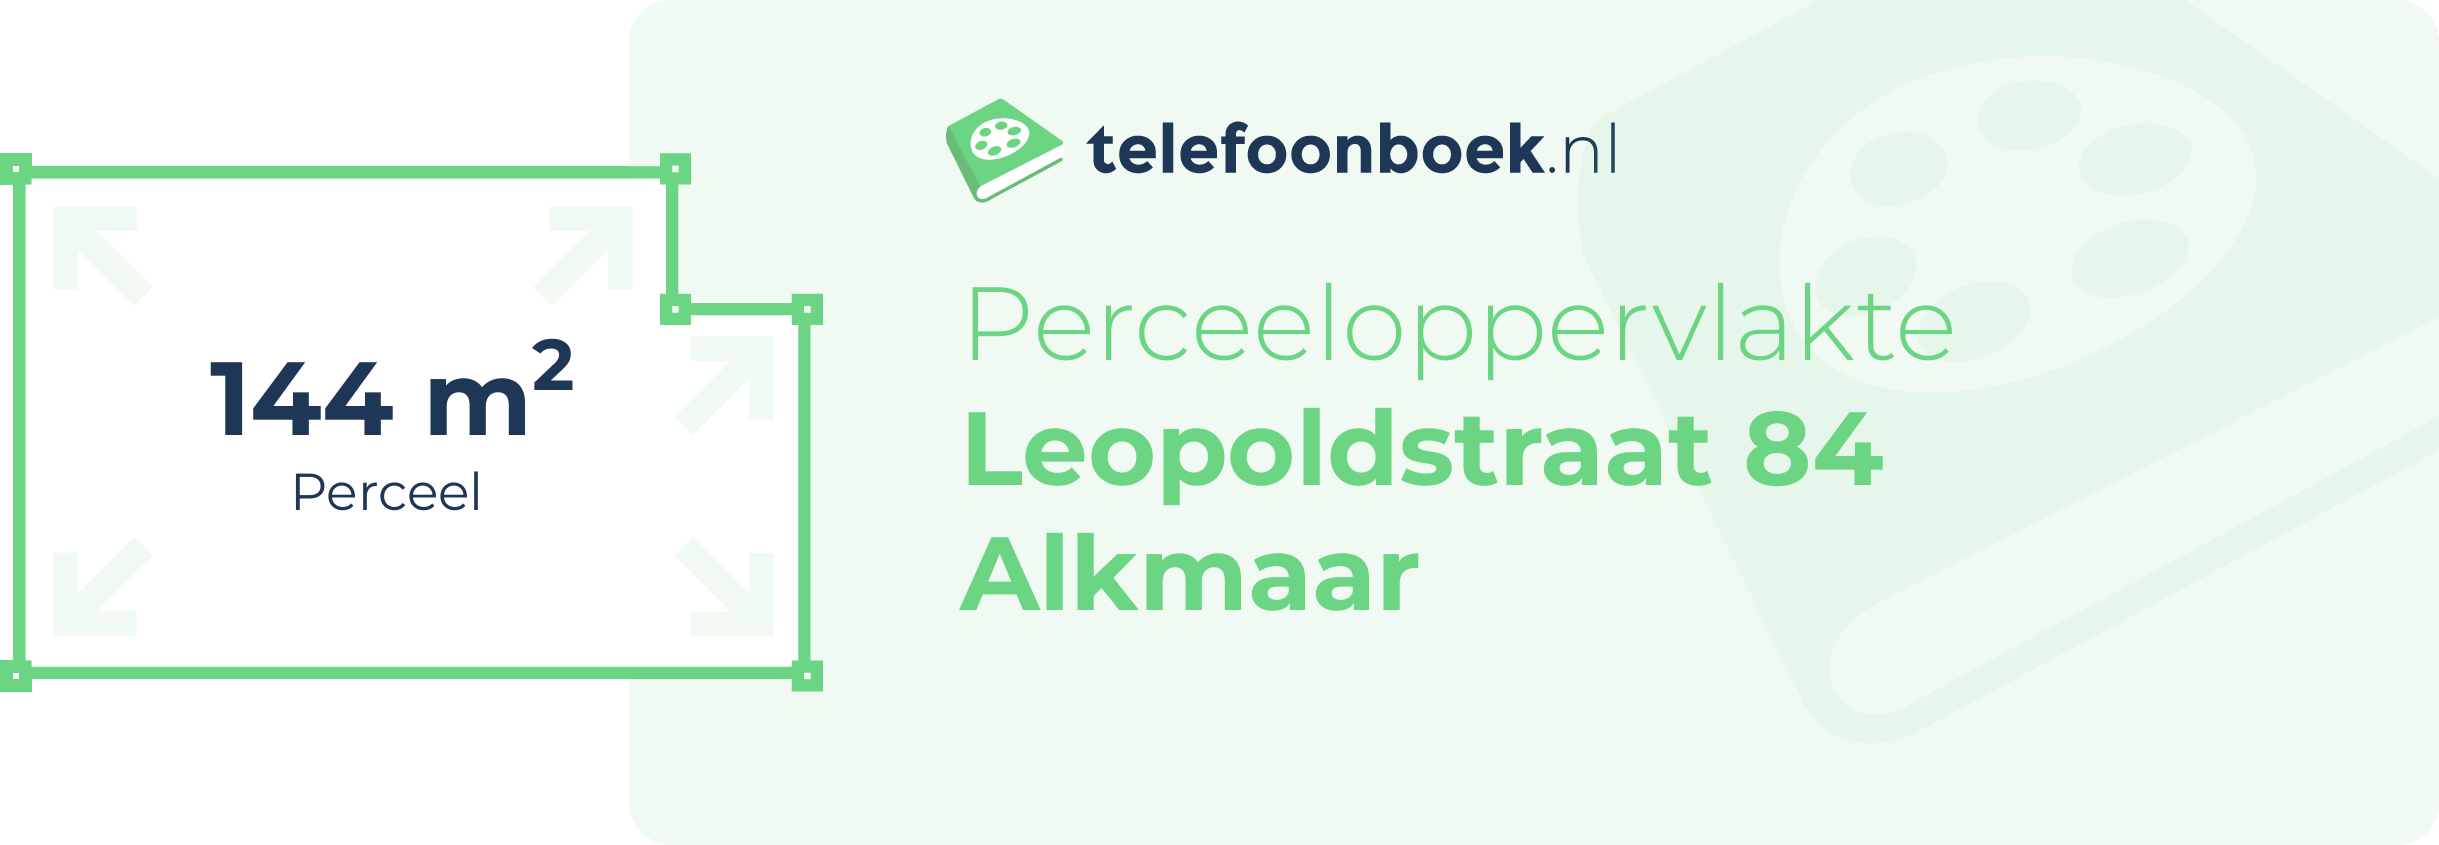 Perceeloppervlakte Leopoldstraat 84 Alkmaar